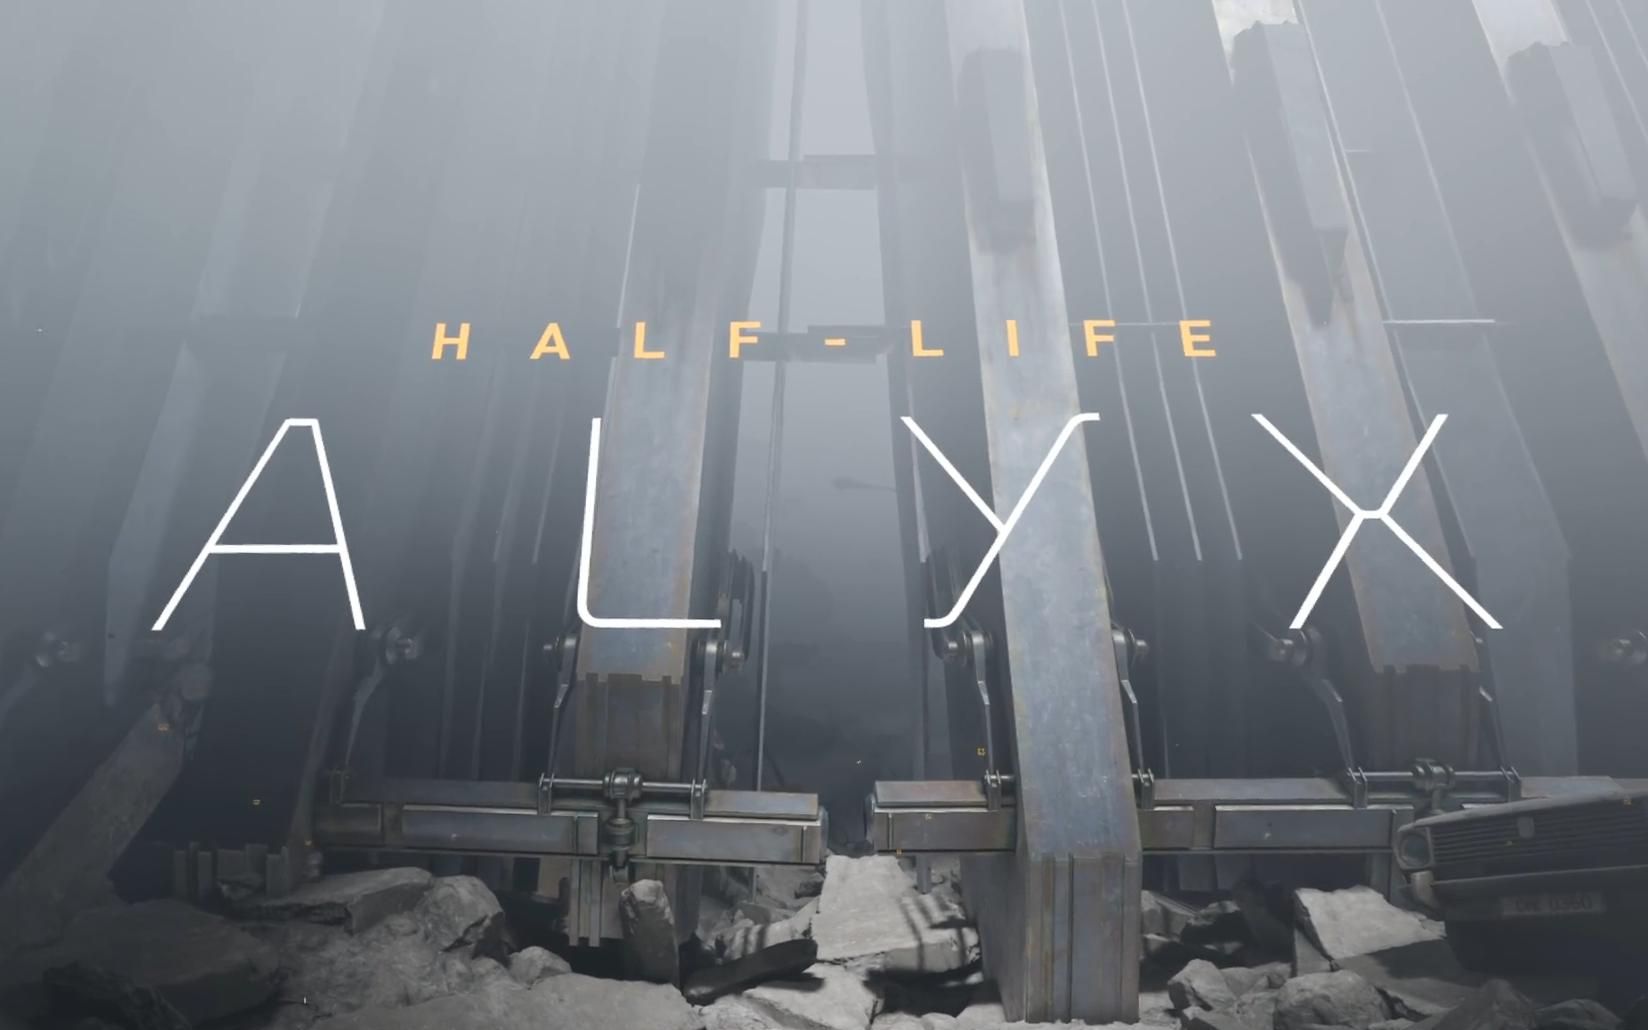 Музыка в игре Half-Life Alyx Anti-Citizen является важной частью ее атмосферы. Она помогает передать эмоции и создать особую атмосферу, которая погружает игрока в мир игры. Треки в наборе Half-Life Alyx Anti-Citizen разнообразны и включают в себя как электронные, так и оркестровые композиции.